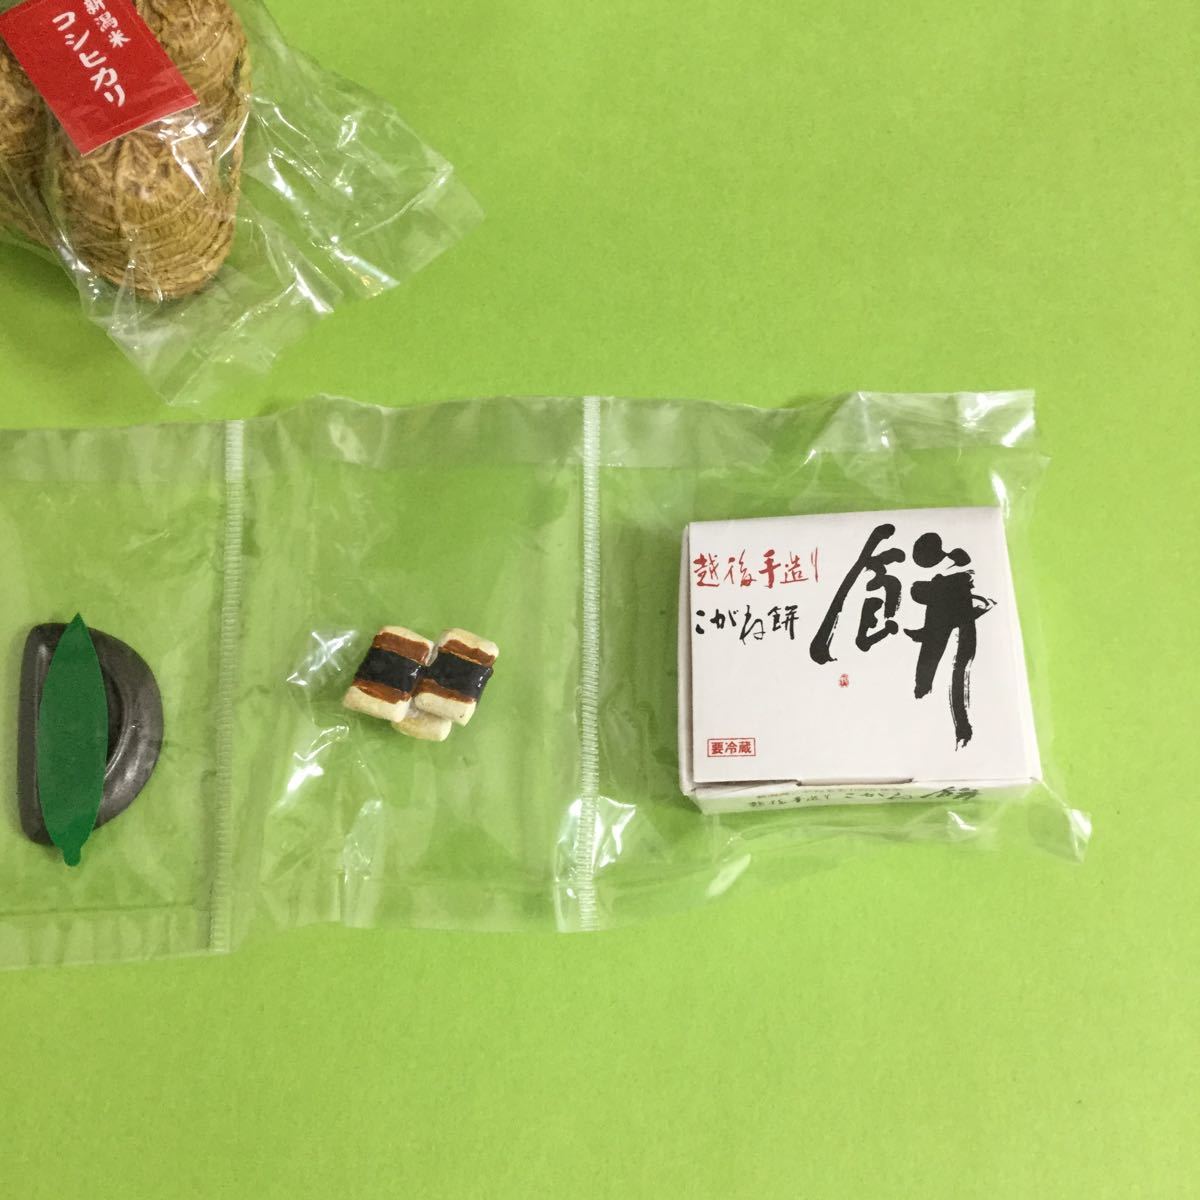 【 リーメント】「11. 新潟県産 こしひかり 米袋はどうも・・・。」 産地直送もぎたてパック / Re-Ment ぷちサンプルシリーズ / 食玩_画像4